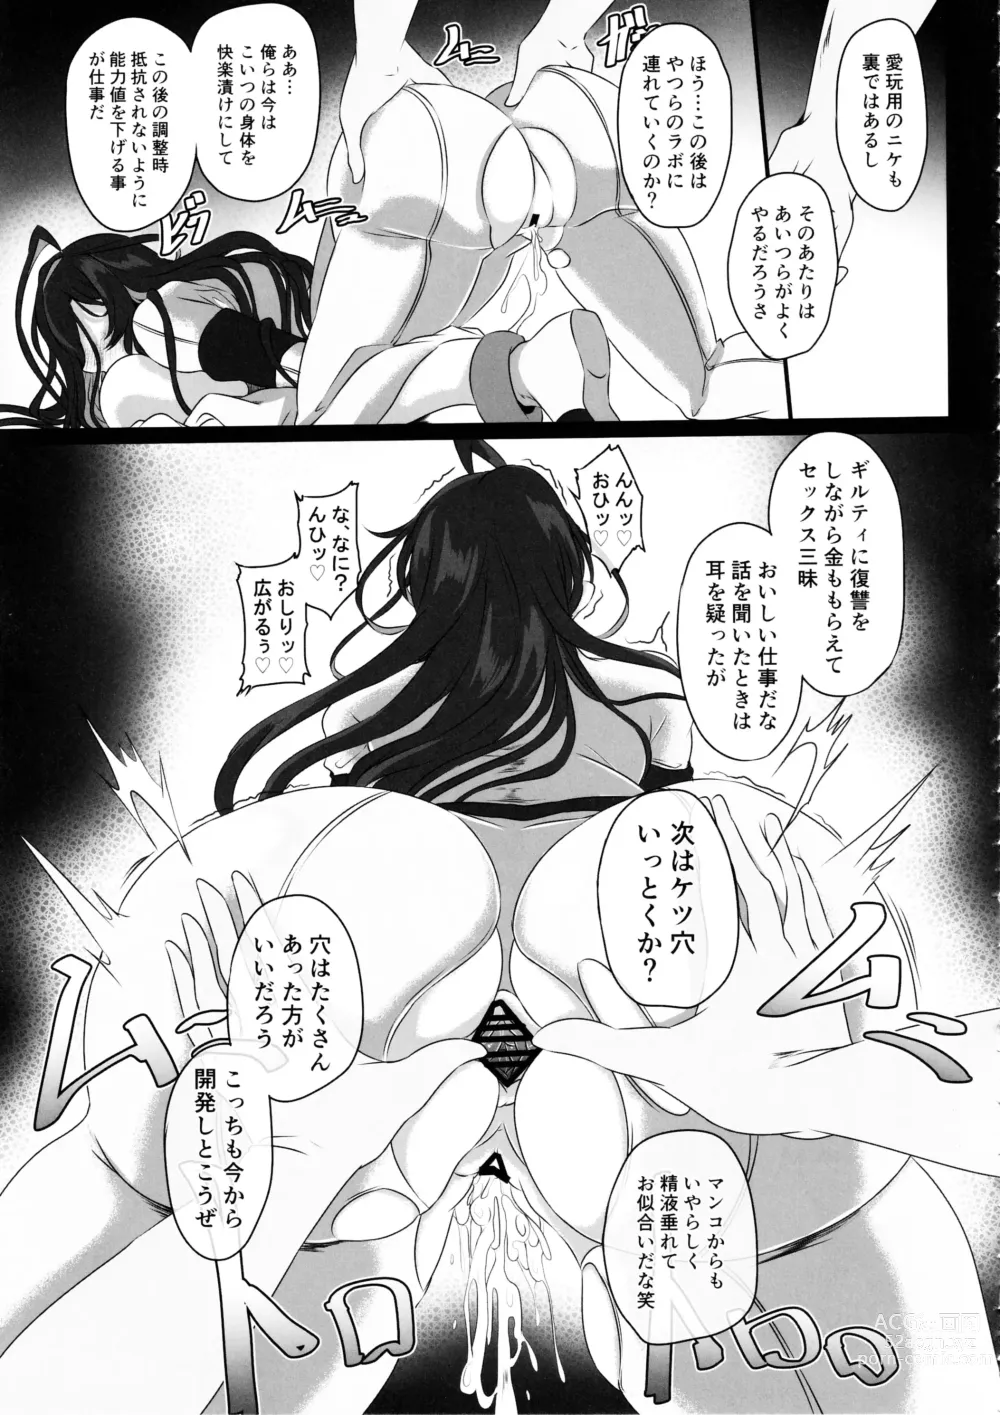 Page 23 of doujinshi Nikke Fallen Indecent Target: Guilty